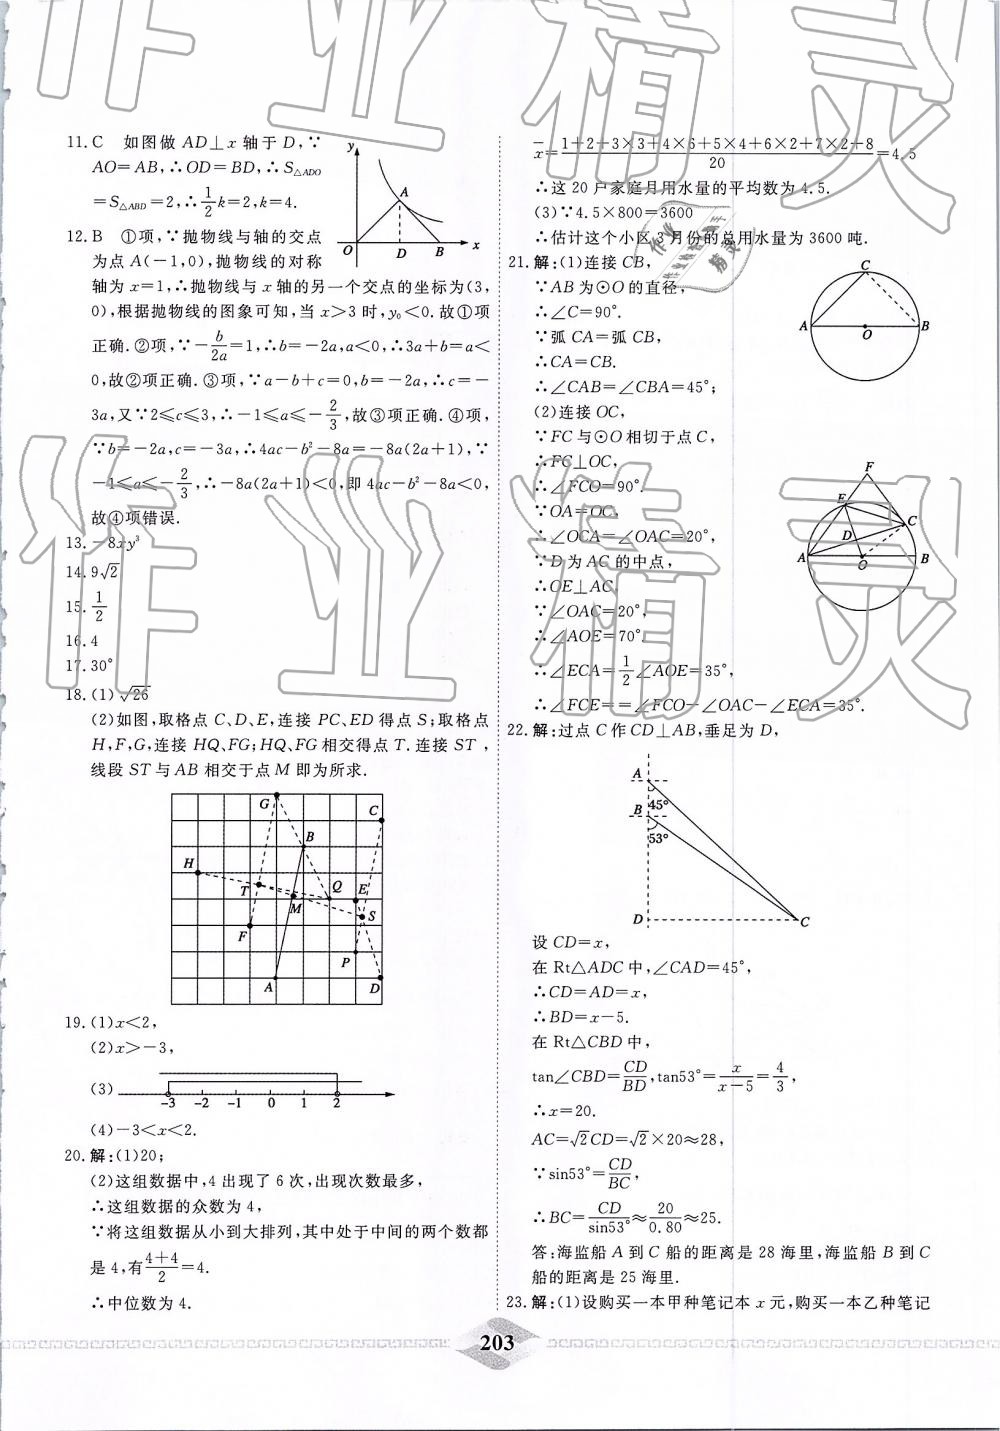 2019年一飞冲天中考模拟试题汇编数学 第43页